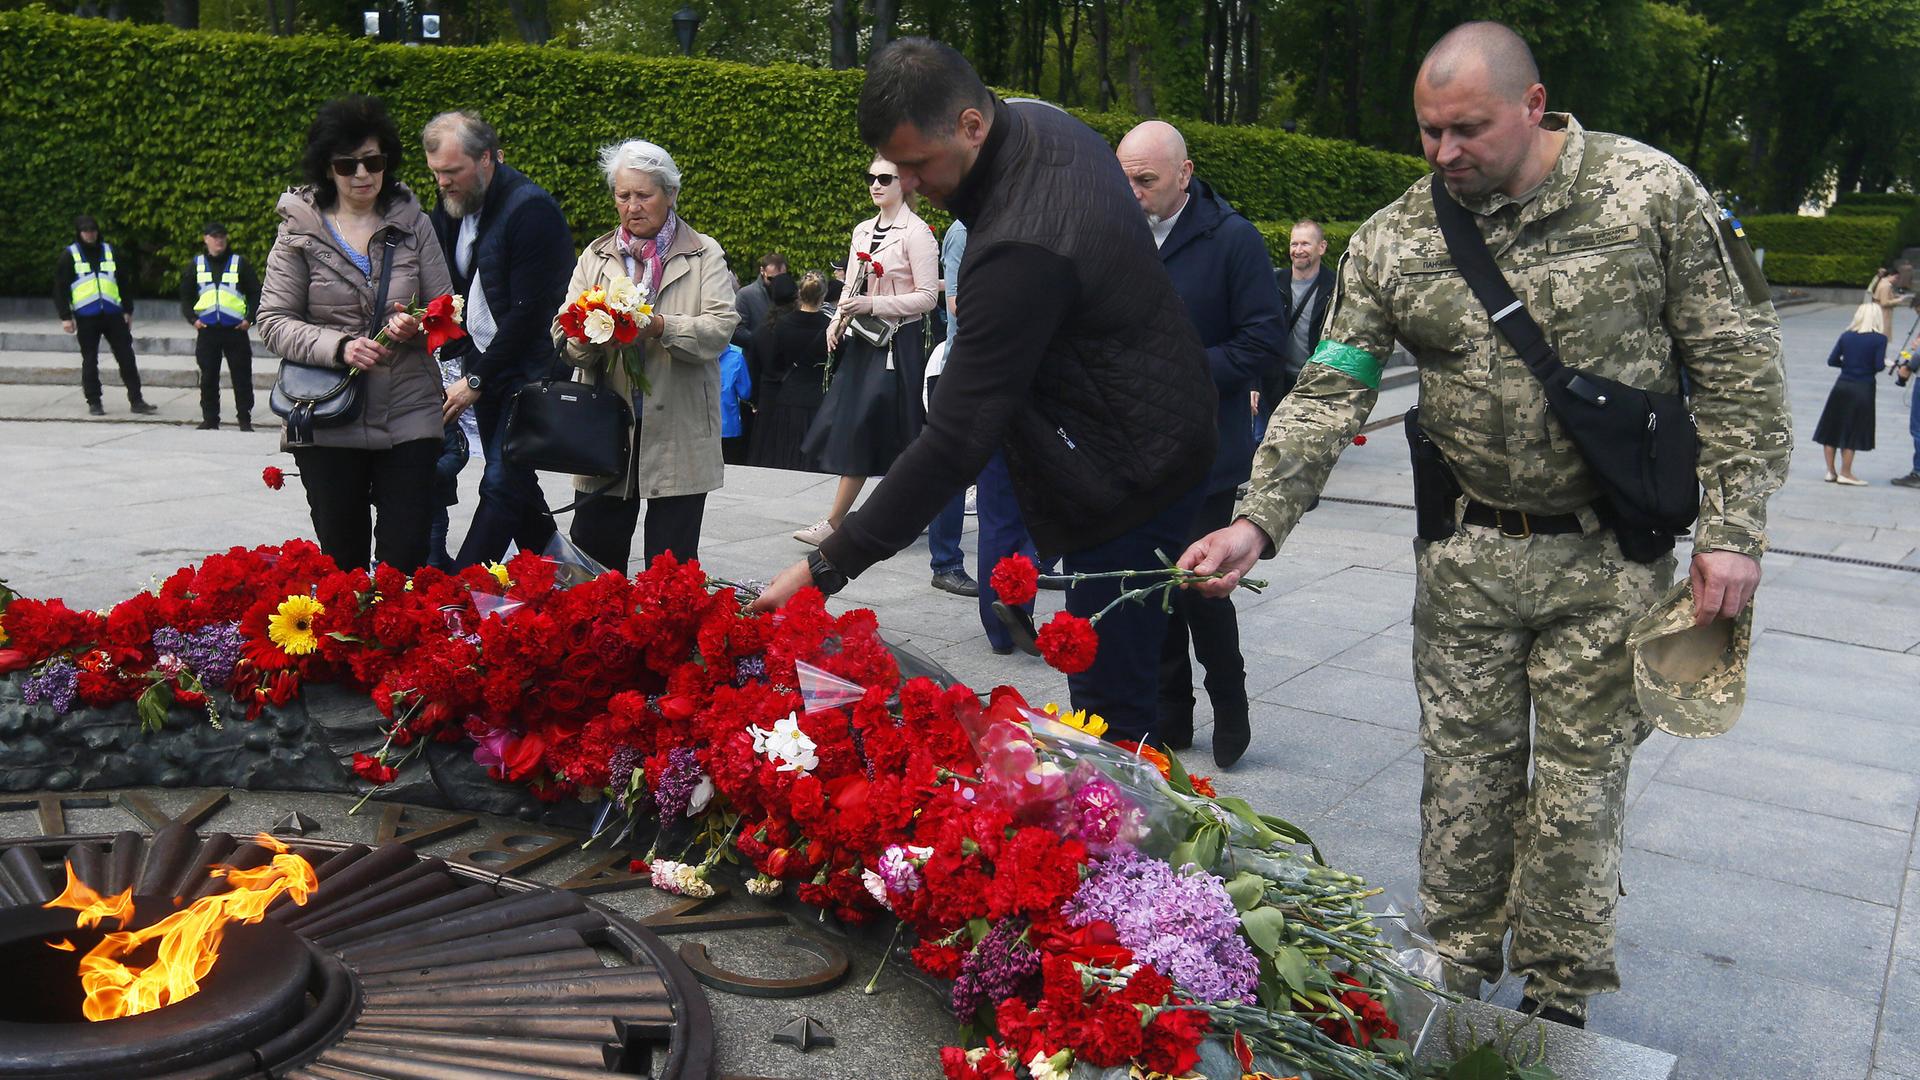 Das Foto zeigt einen Soldaten in Kiew, der am Grab des Unbekannten Soldaten Blumen niederlegt.